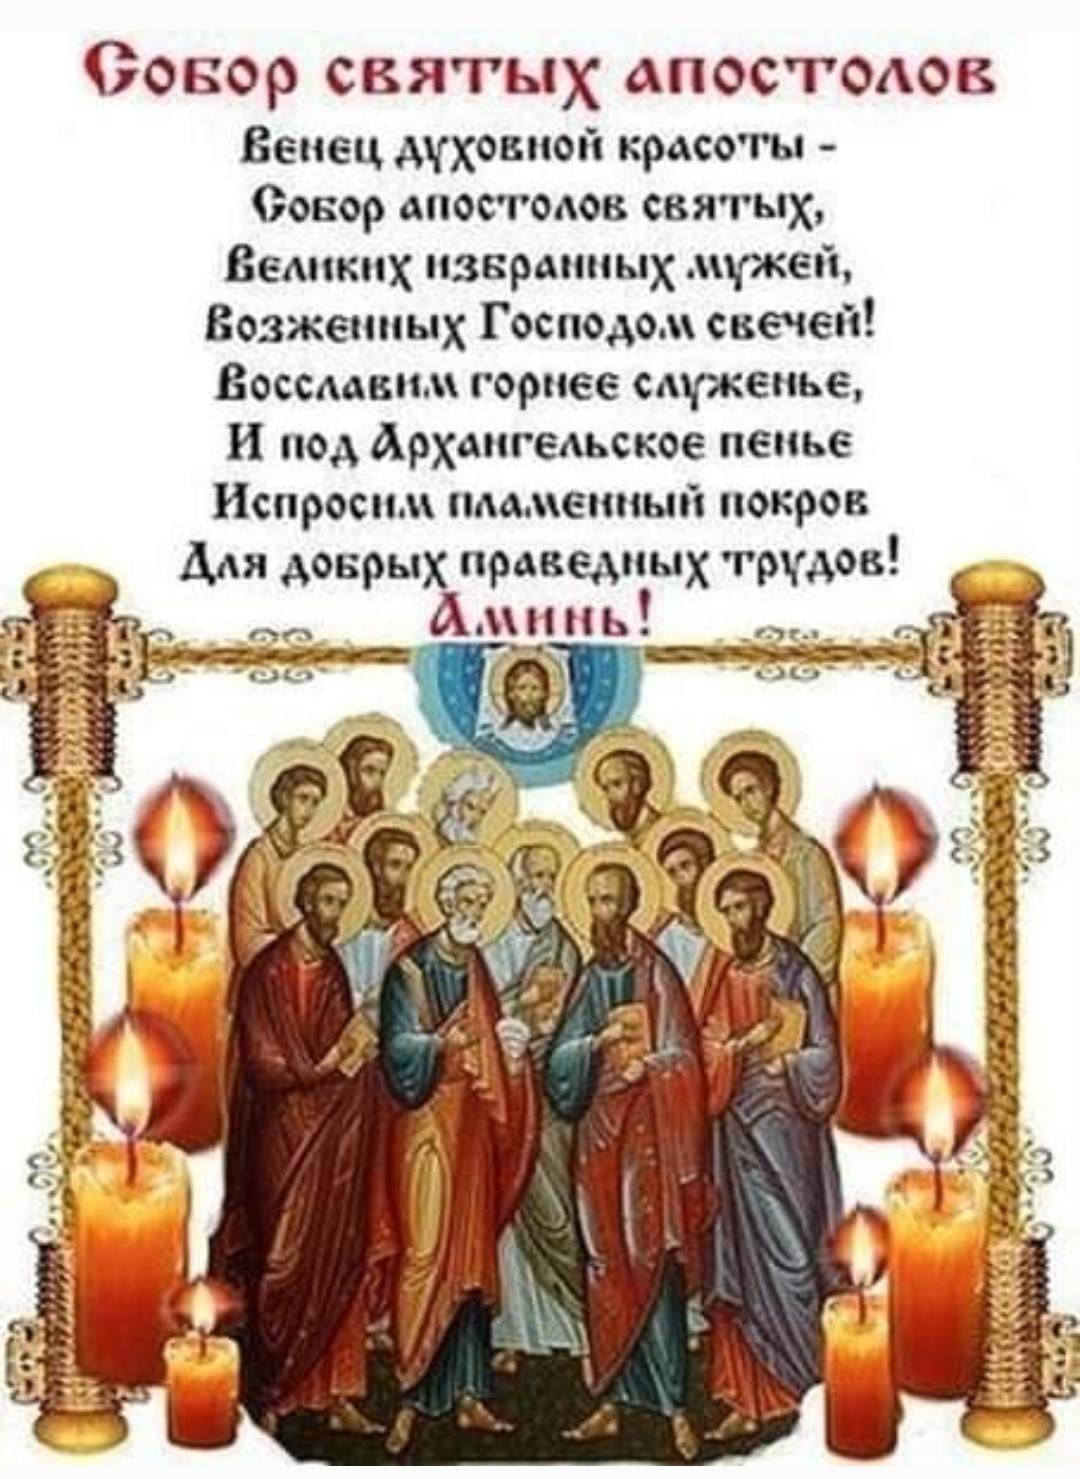 13 июля - праздник 12 АПОСТОЛОВ: поздравления с Собором 12 апостолов в картинках, приметы на Двенадцать апостолов